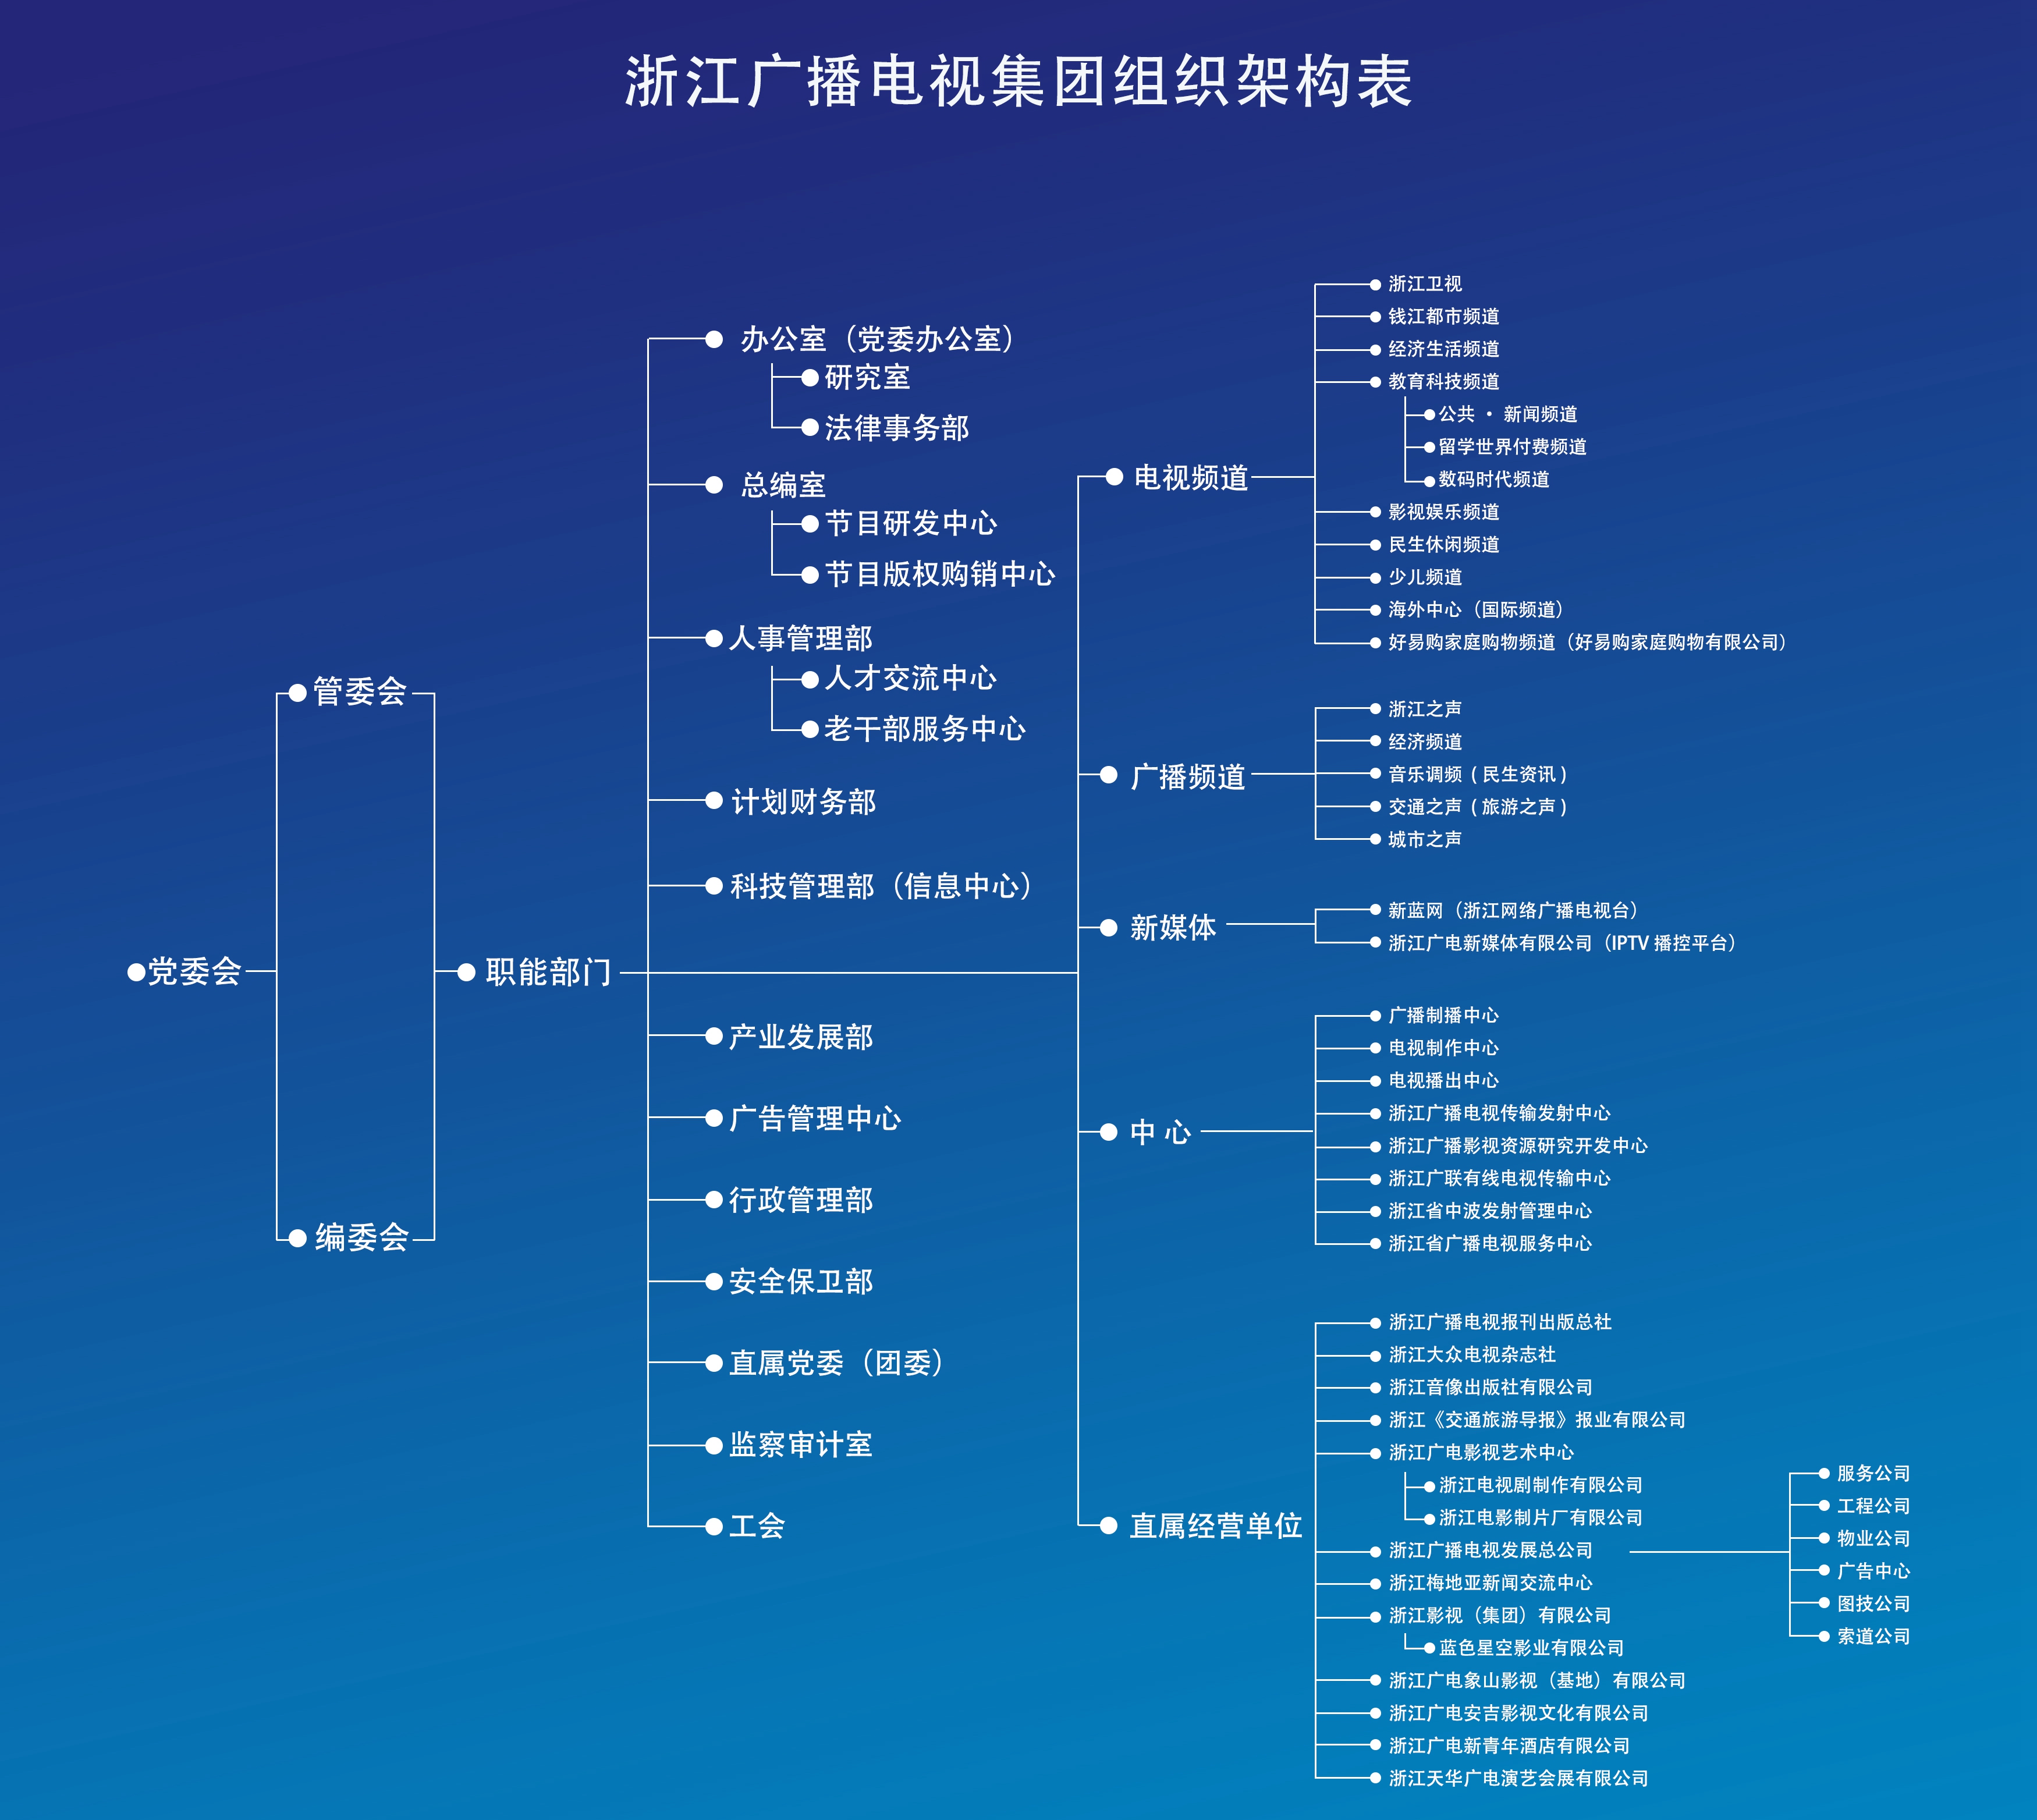 浙江广播电视集团组织构架表